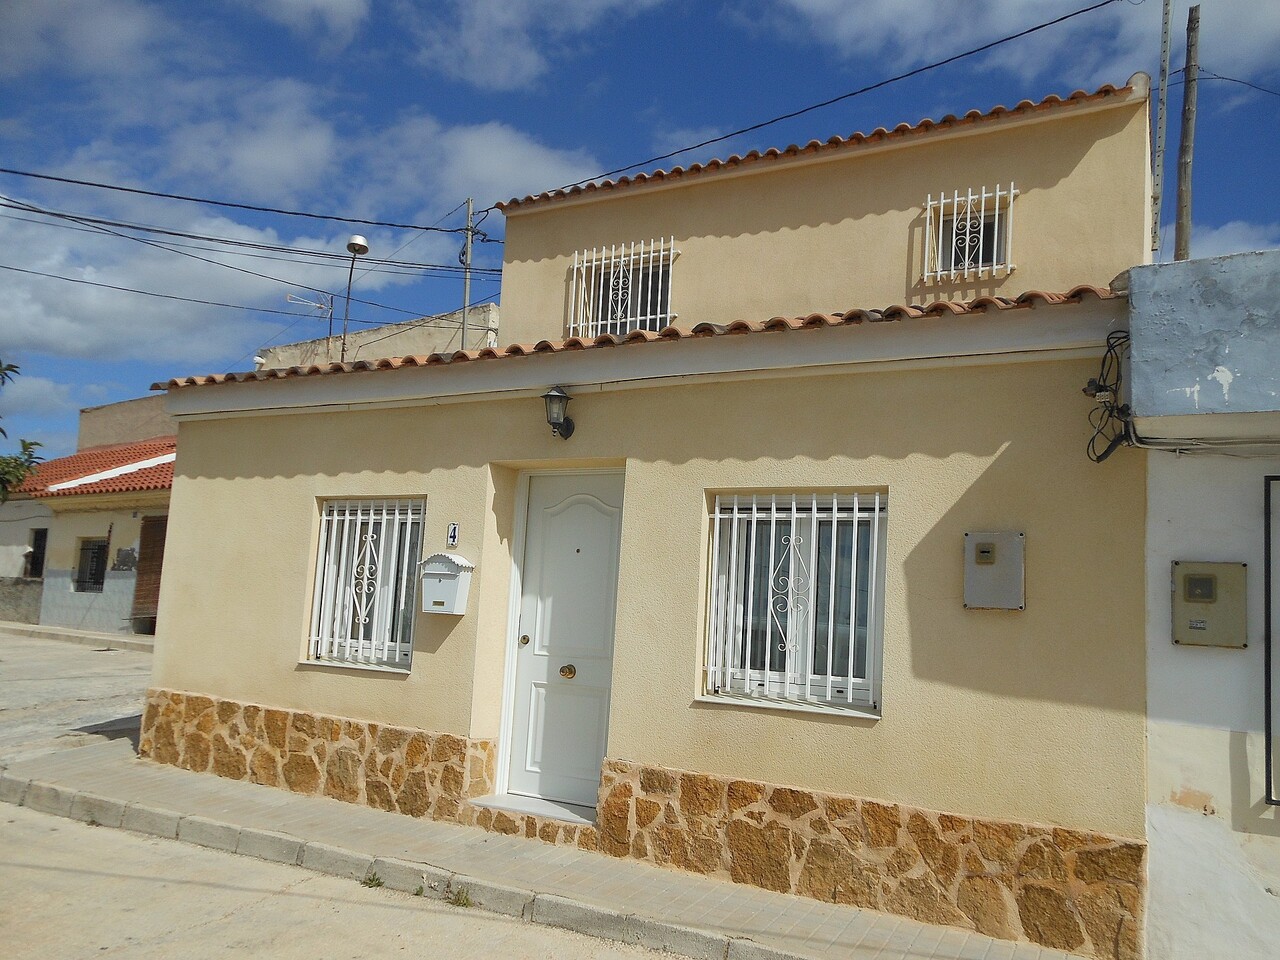 3 bedroom house / villa for sale in Pinoso / El Pinós, Costa Blanca